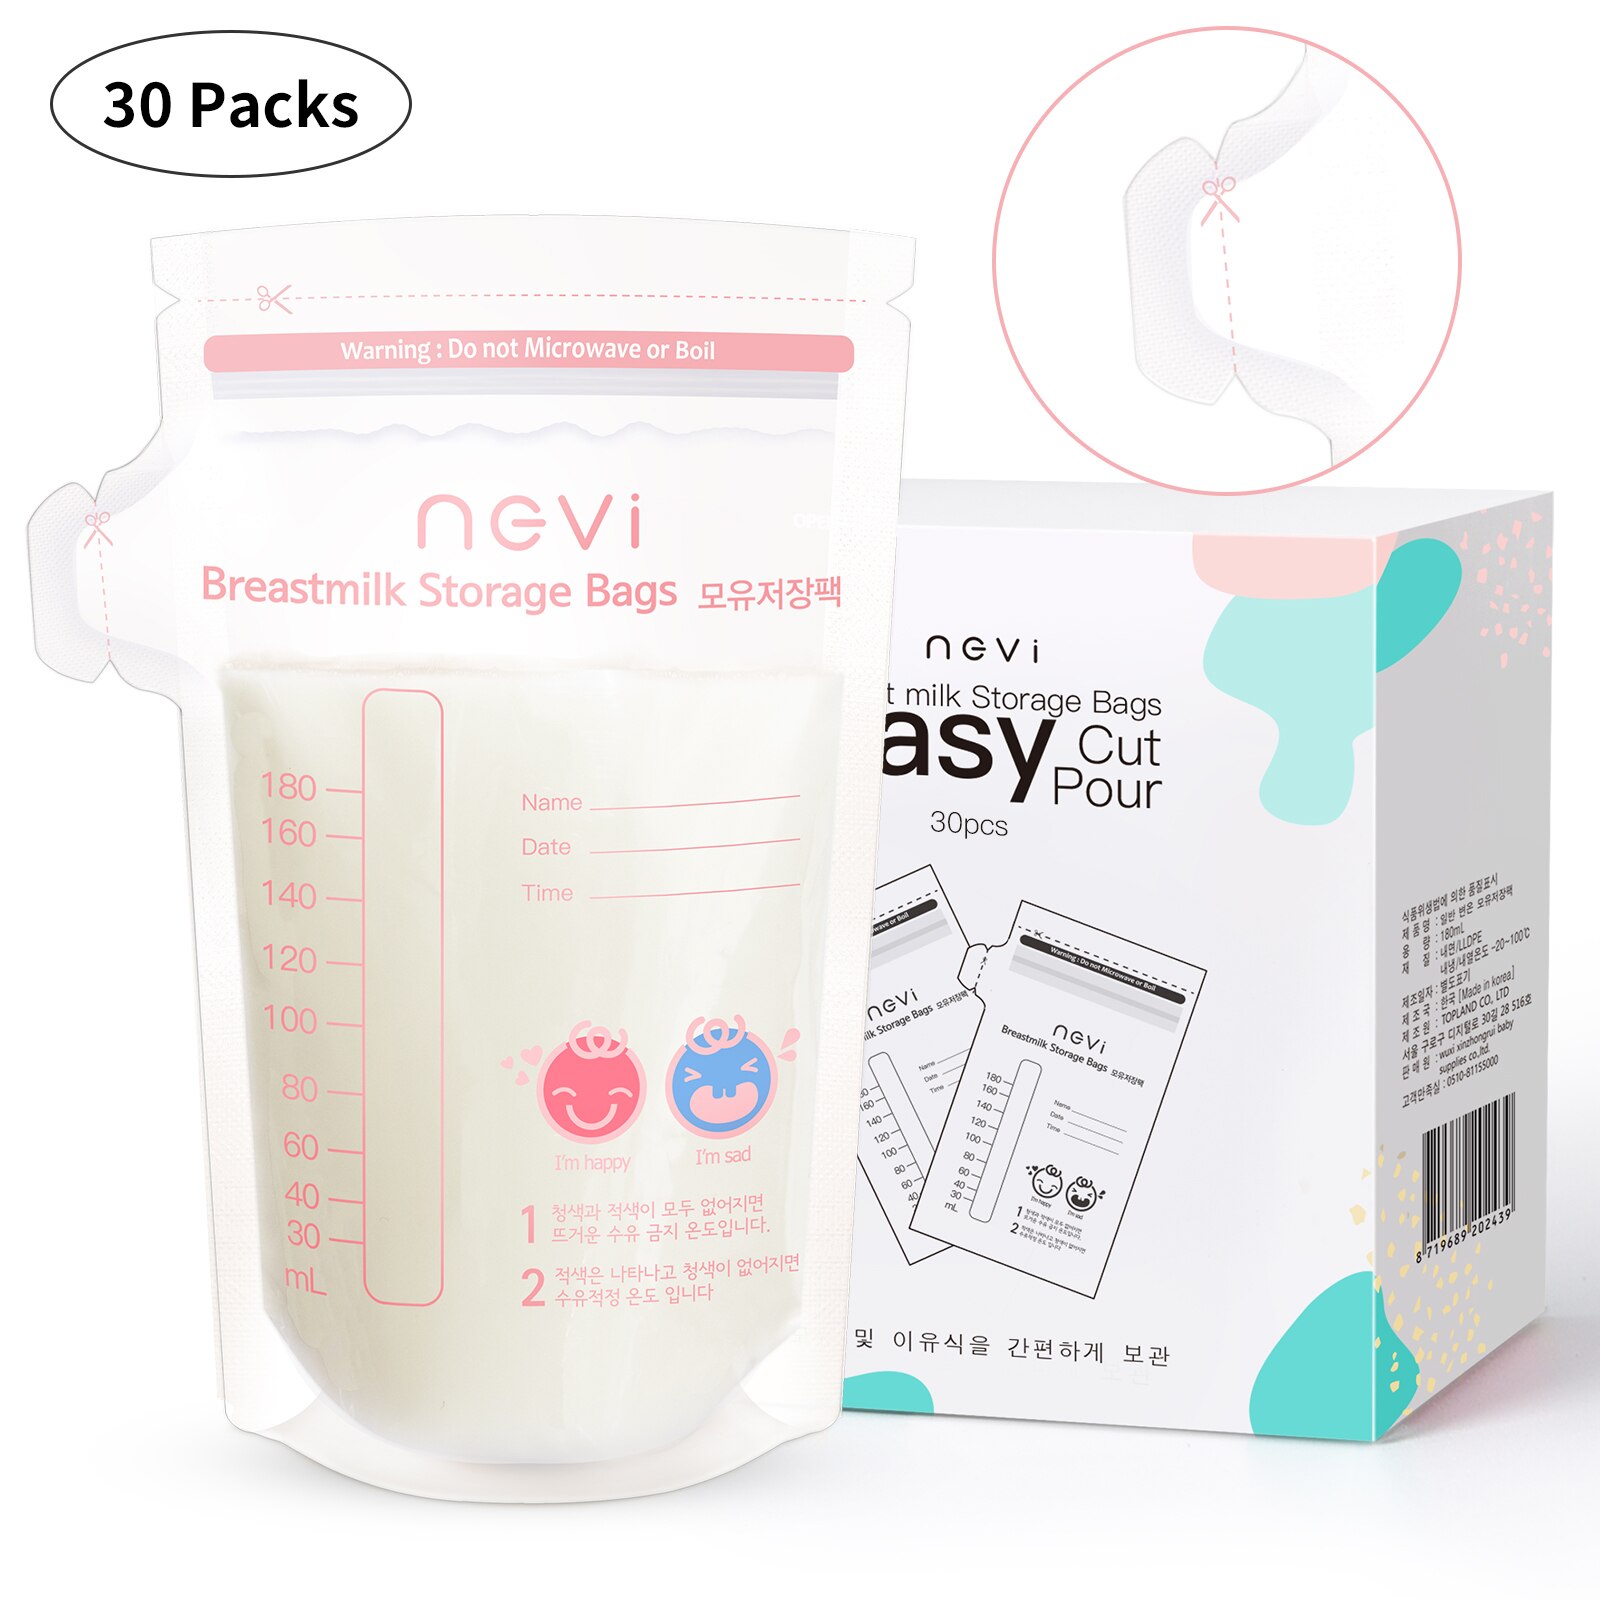 Ncvi opbevaringsposer til brystmælk ,180 tæller 6 oz fryseposer til mælk til langvarig amning opbevaring importeret fra korea, bpa fri: 30- pakke-tud